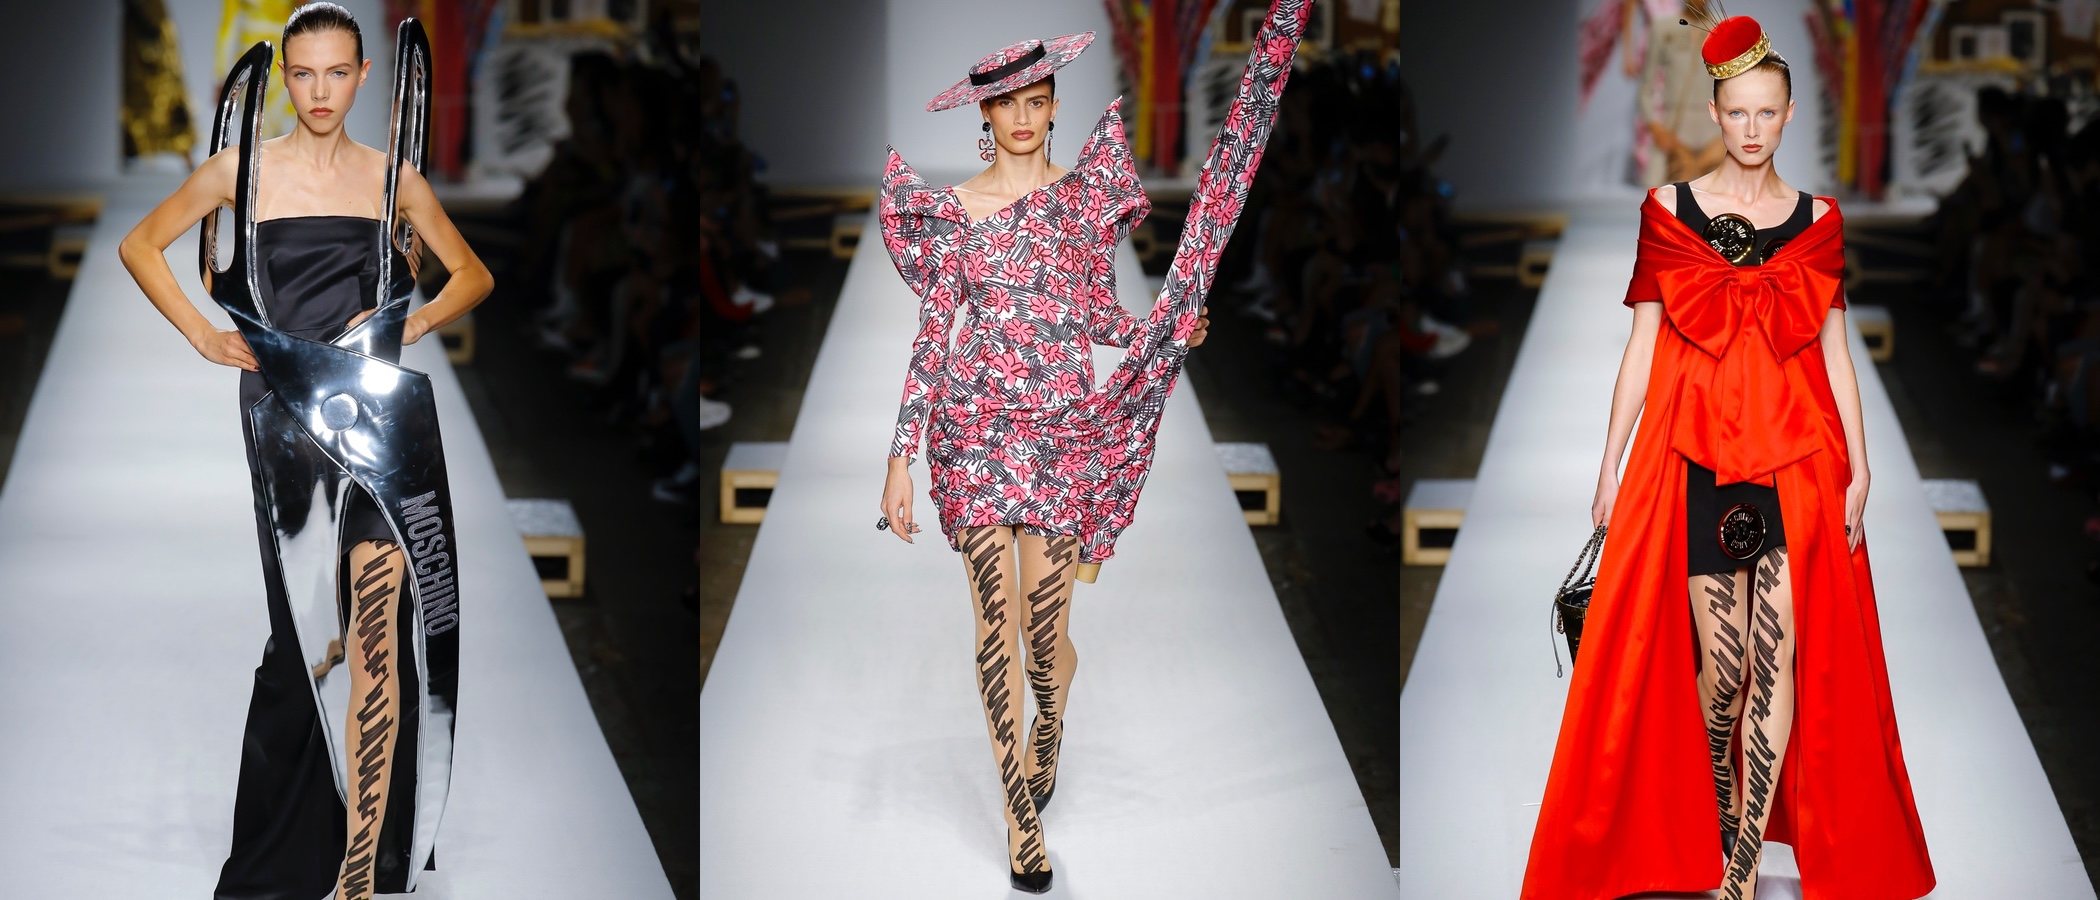 Los bocetos de Moschino cobran vida en su primavera/verano 2019 en la Milán Fashion Week